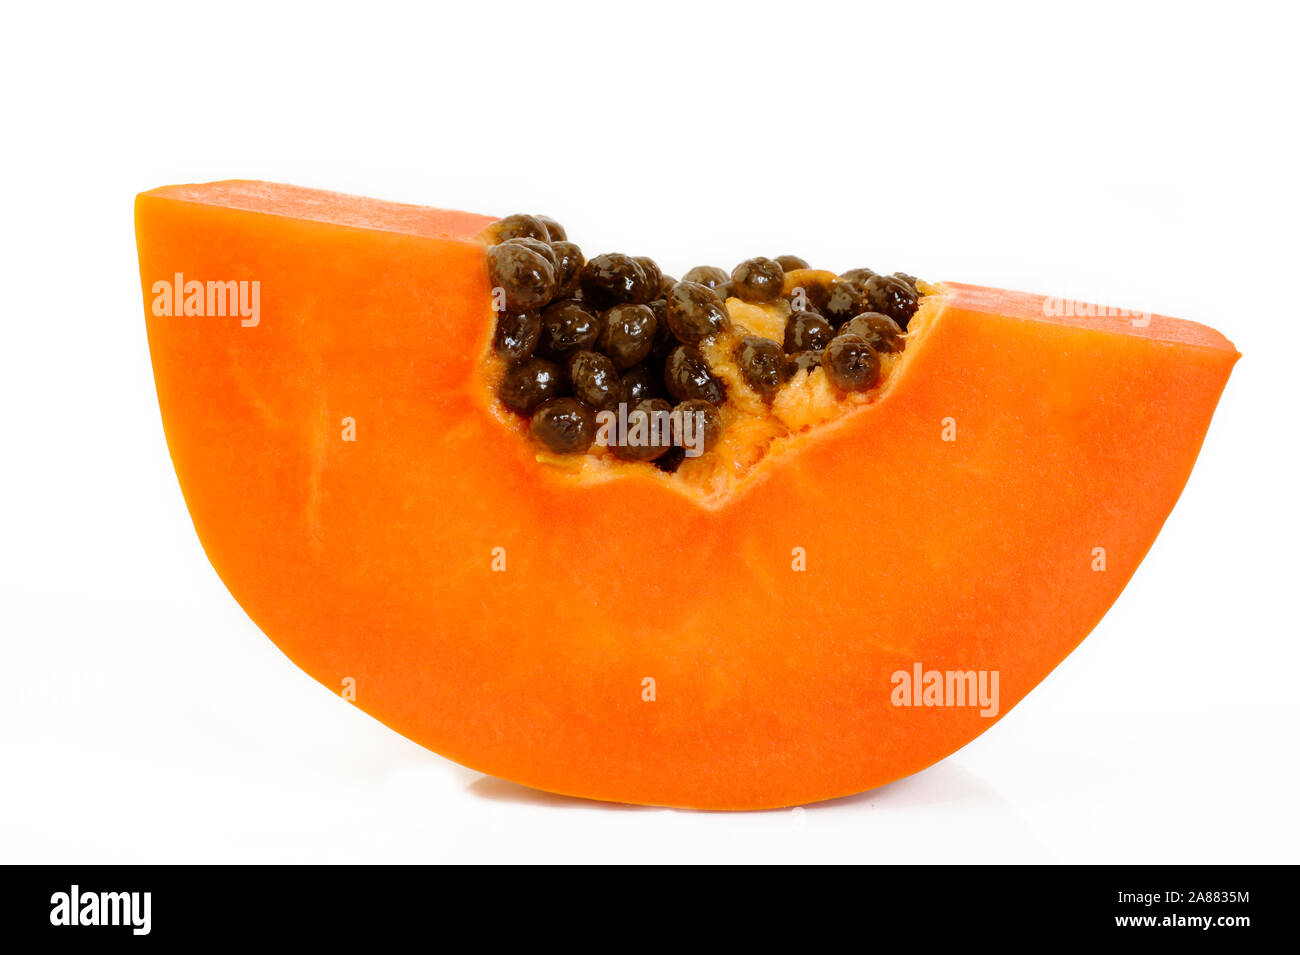 sliced papaya on white background Stock Photo